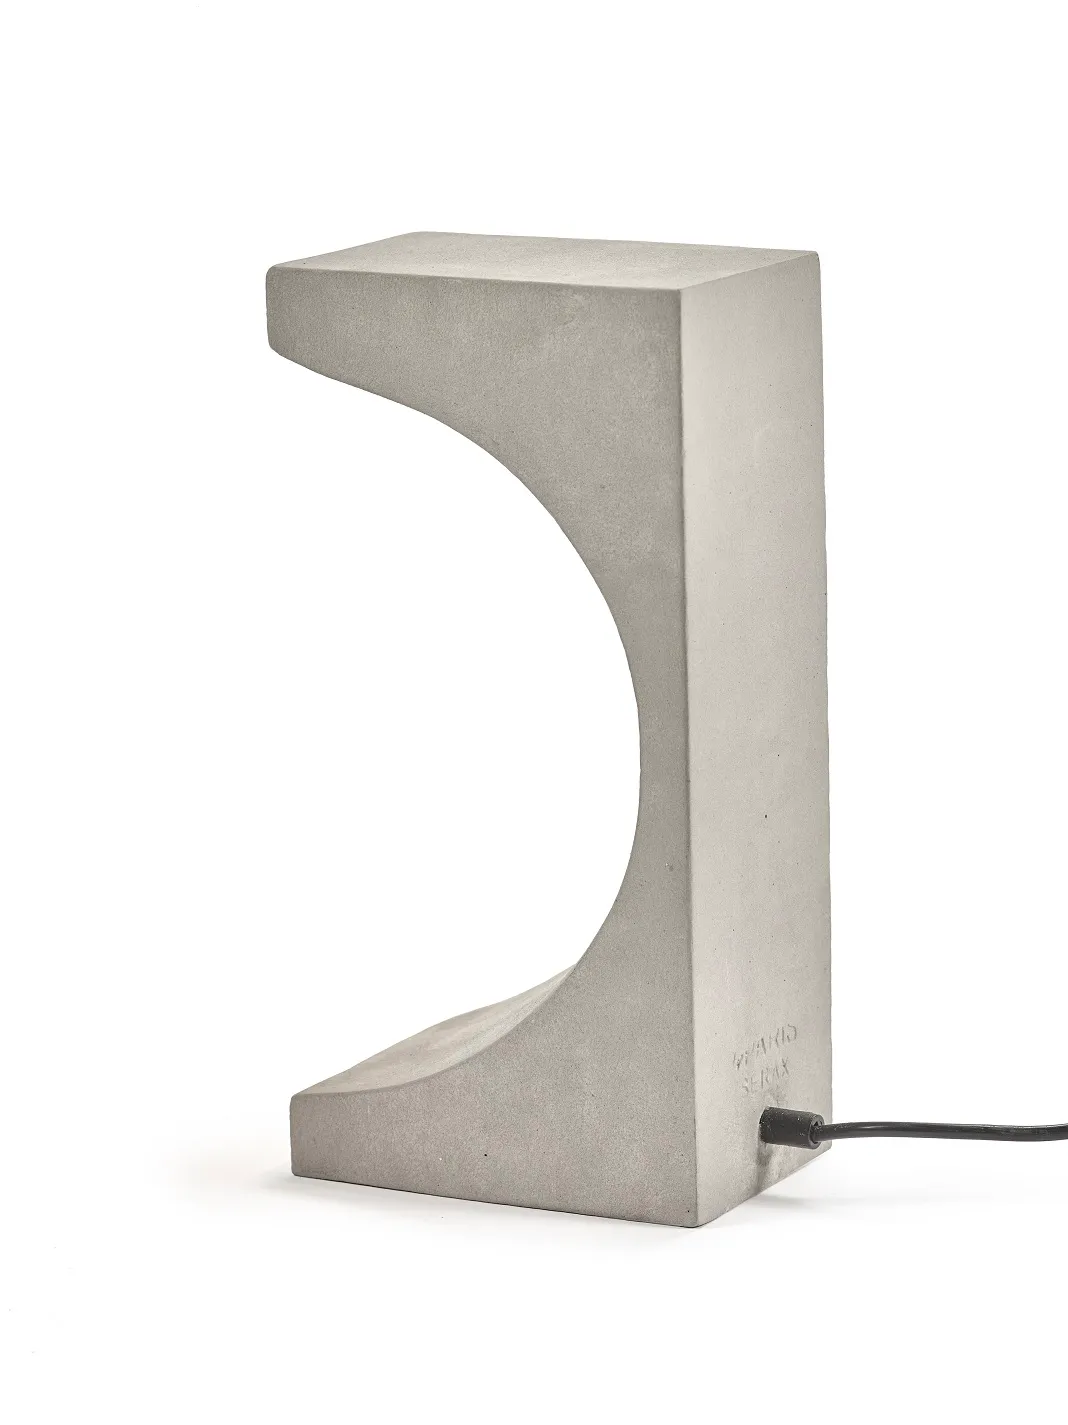 Table Lamp Concrete Tangent L 16.5 W 11 H 33CM by Patrick Paris